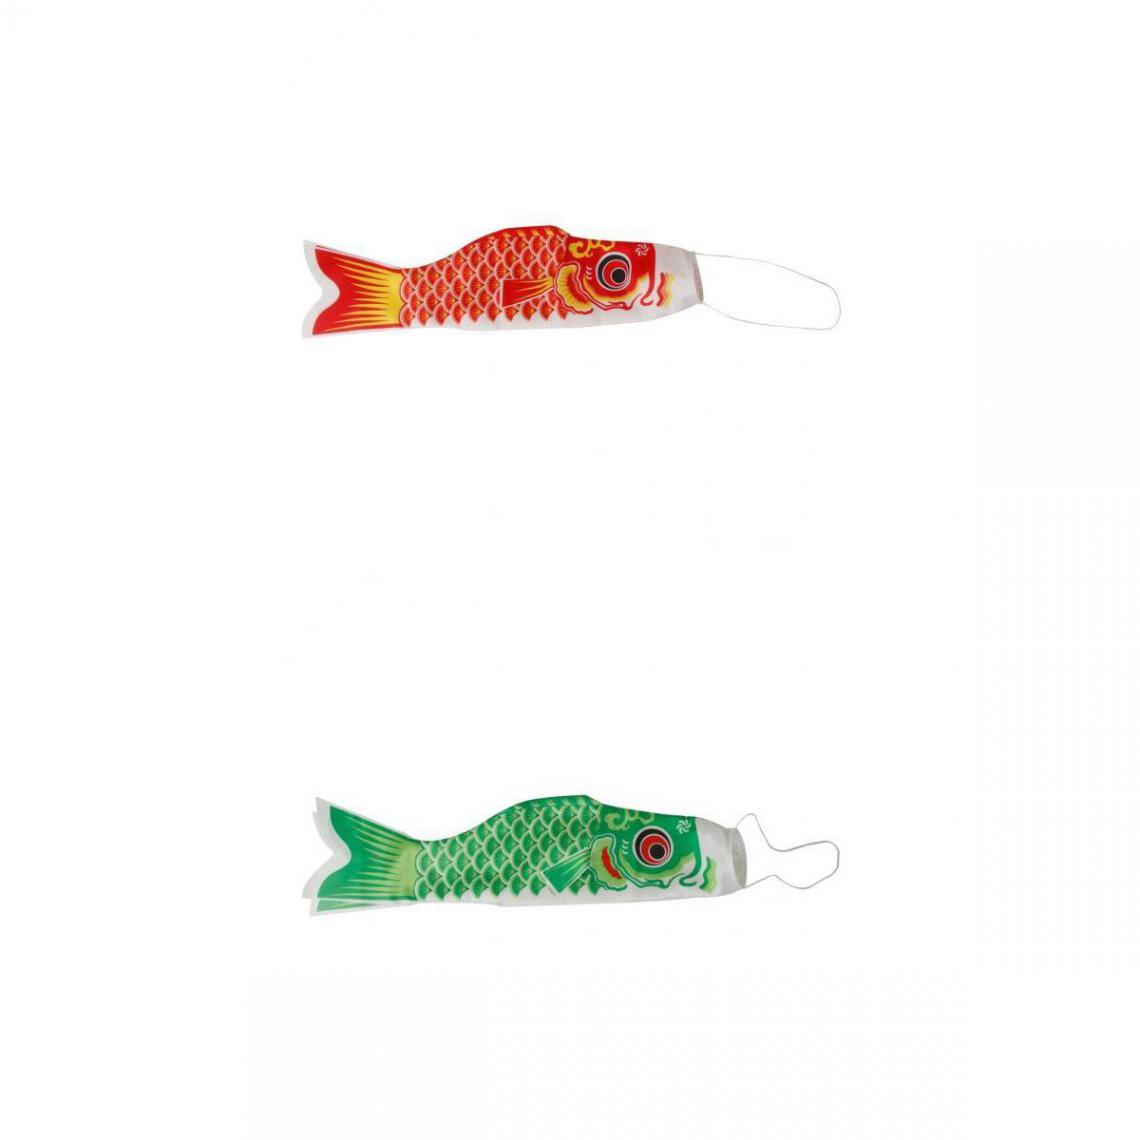 marque generique - 2 X Manche à Vent Japonaise Carp Koinobori Koi Fish Windsock Fish Wind Streamer - Petite déco d'exterieur